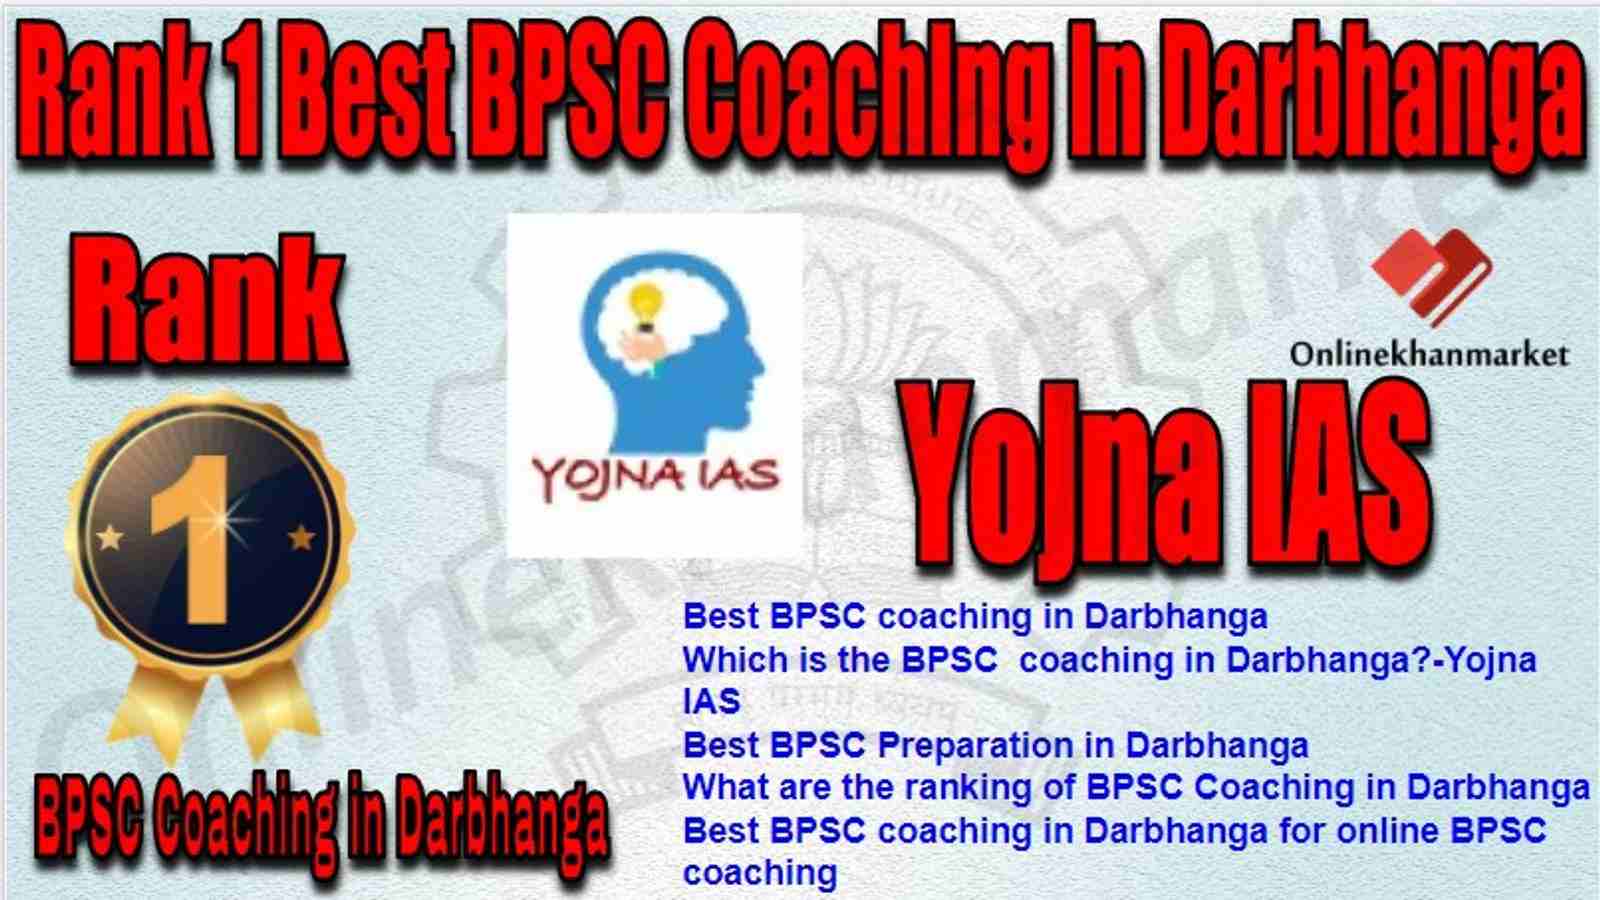 Rank 1 Best BPSC Coaching in darbhanga